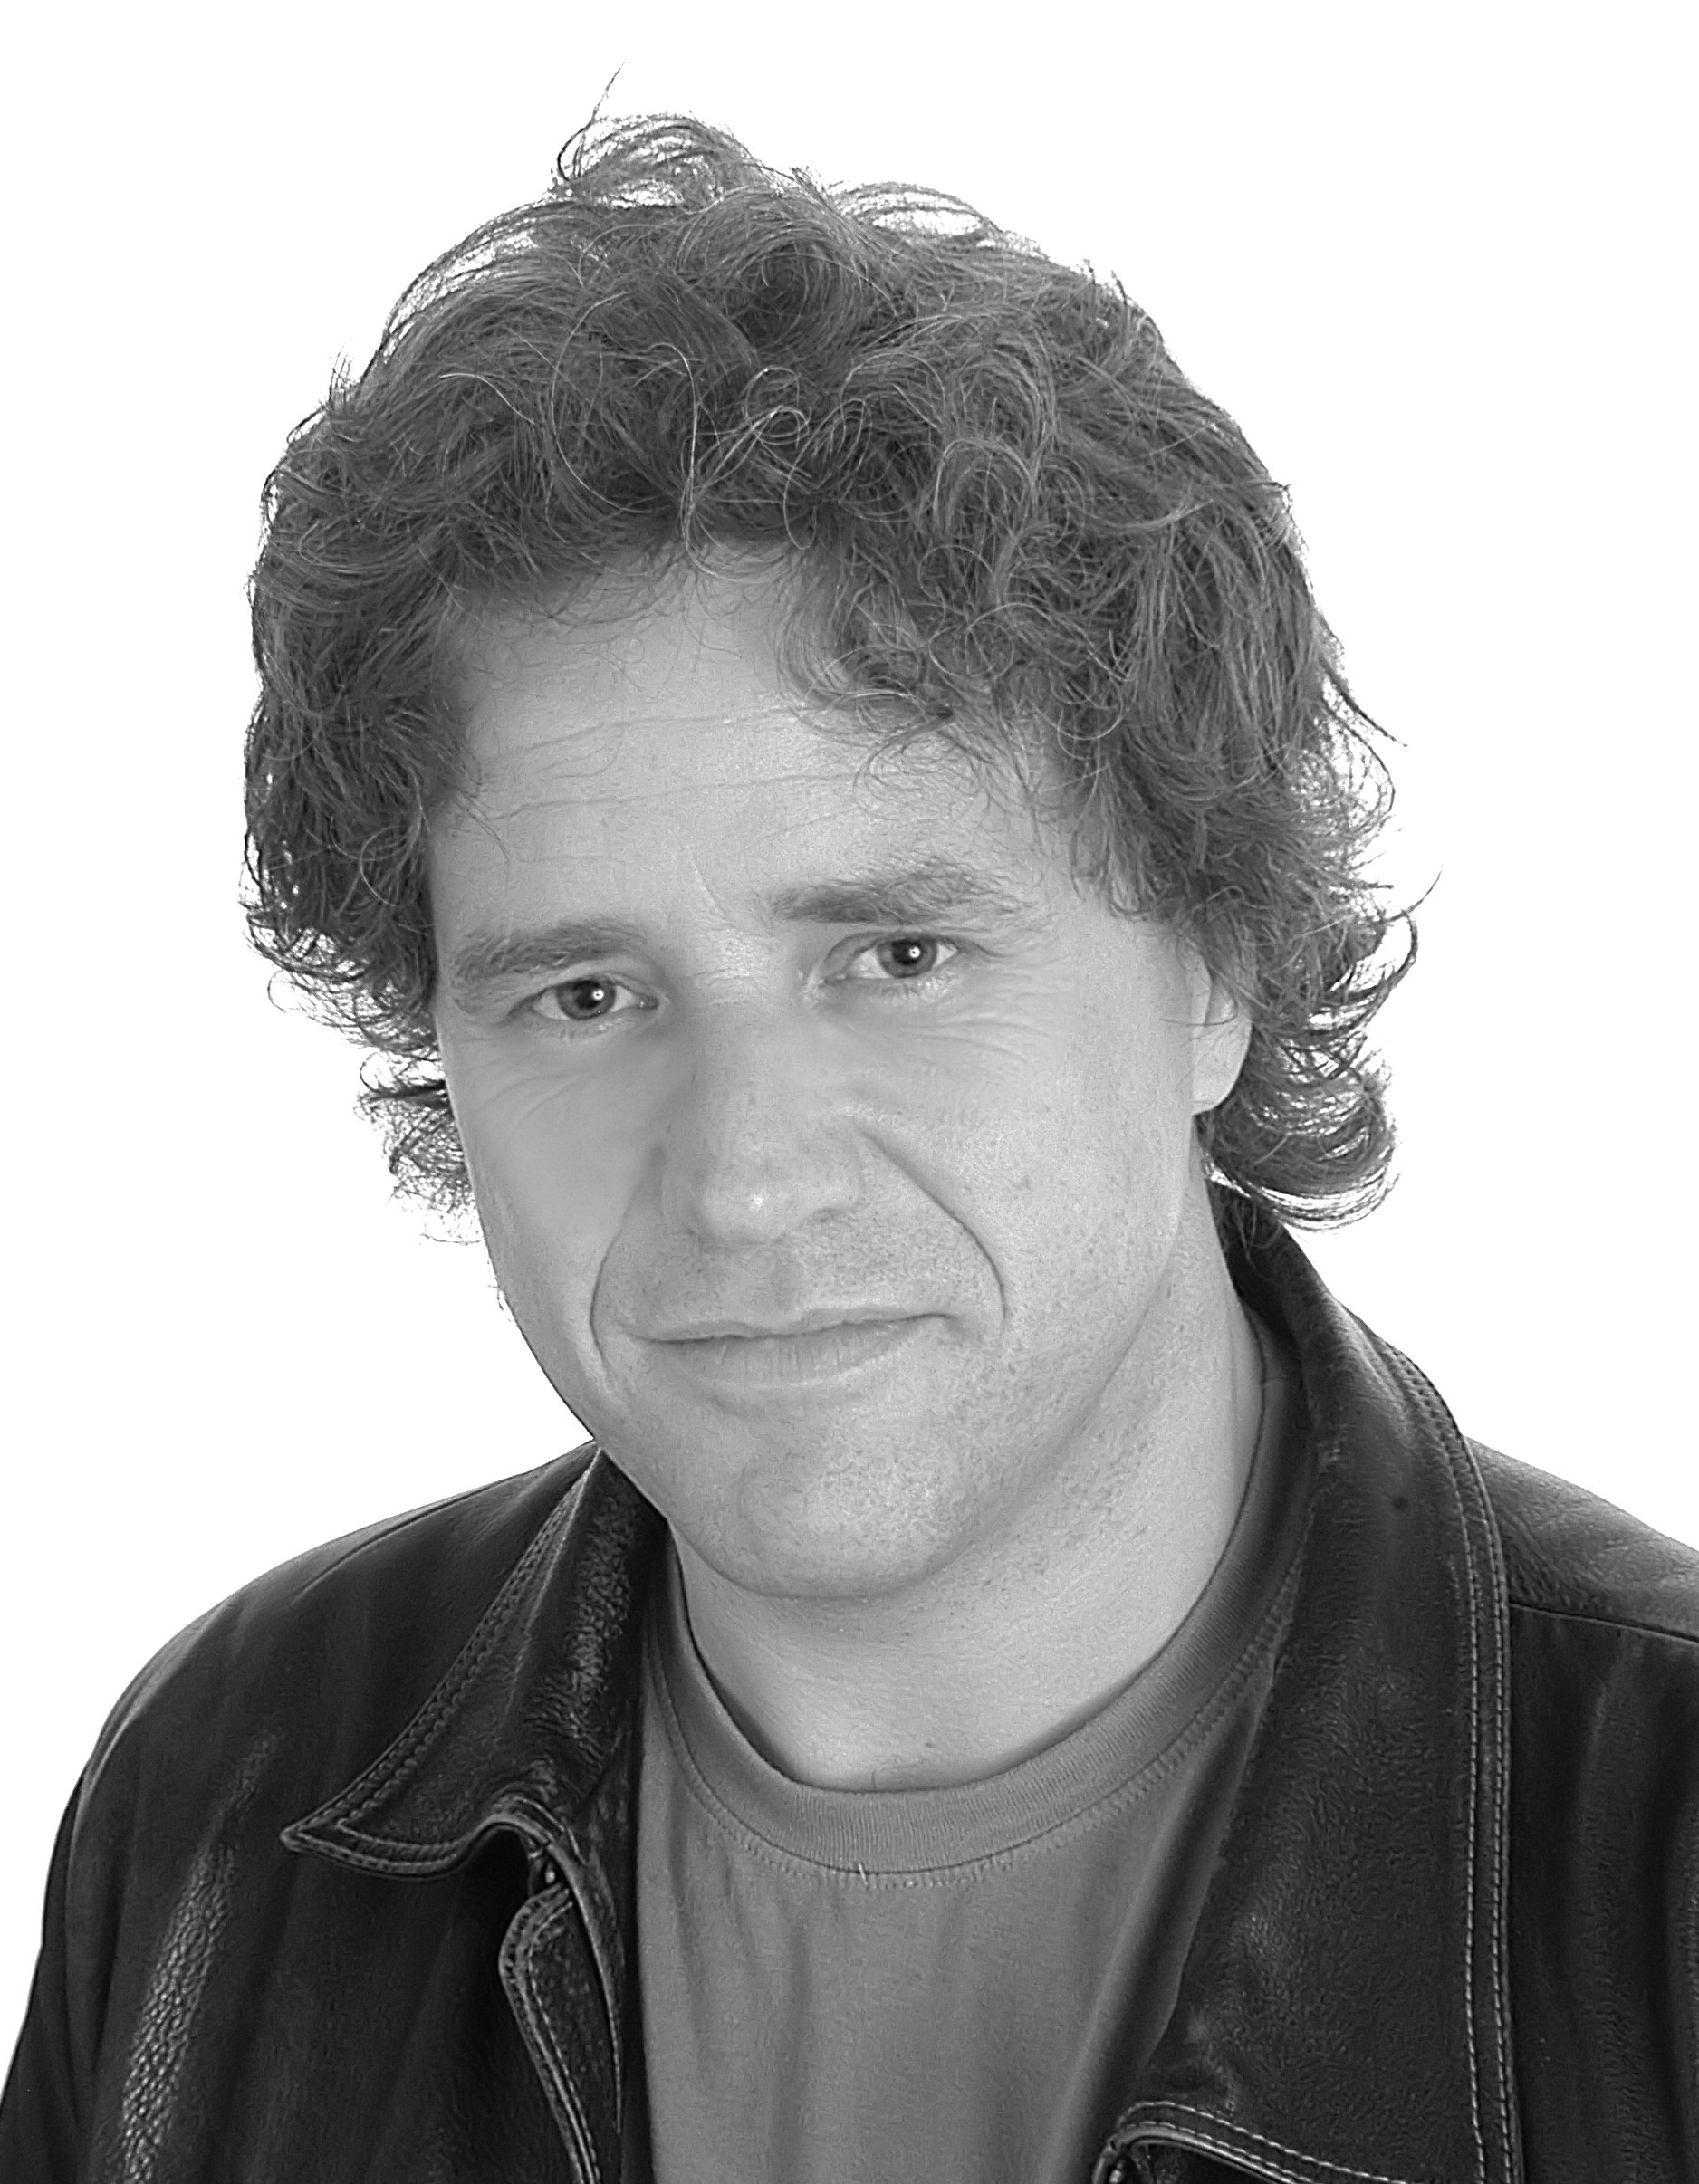 Author Chris James